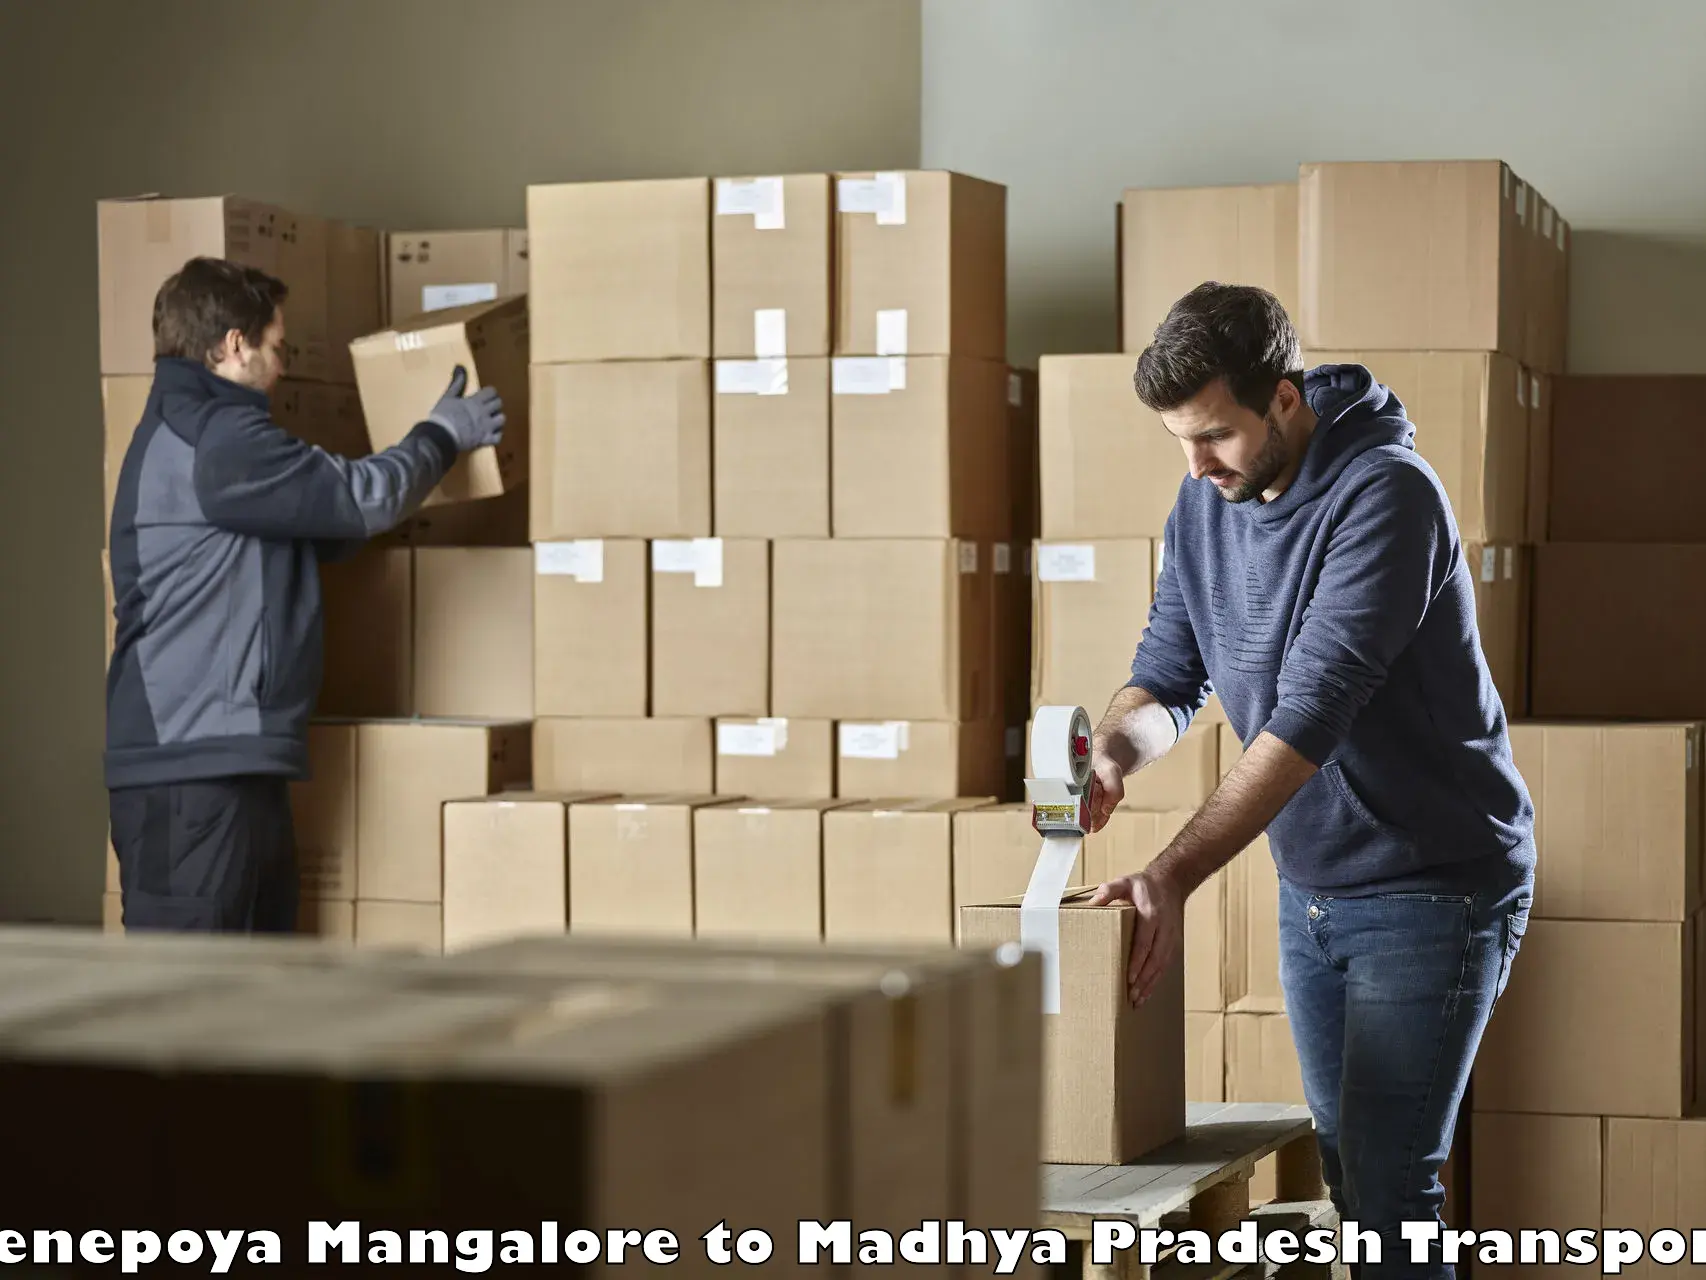 Vehicle parcel service Yenepoya Mangalore to Mandideep